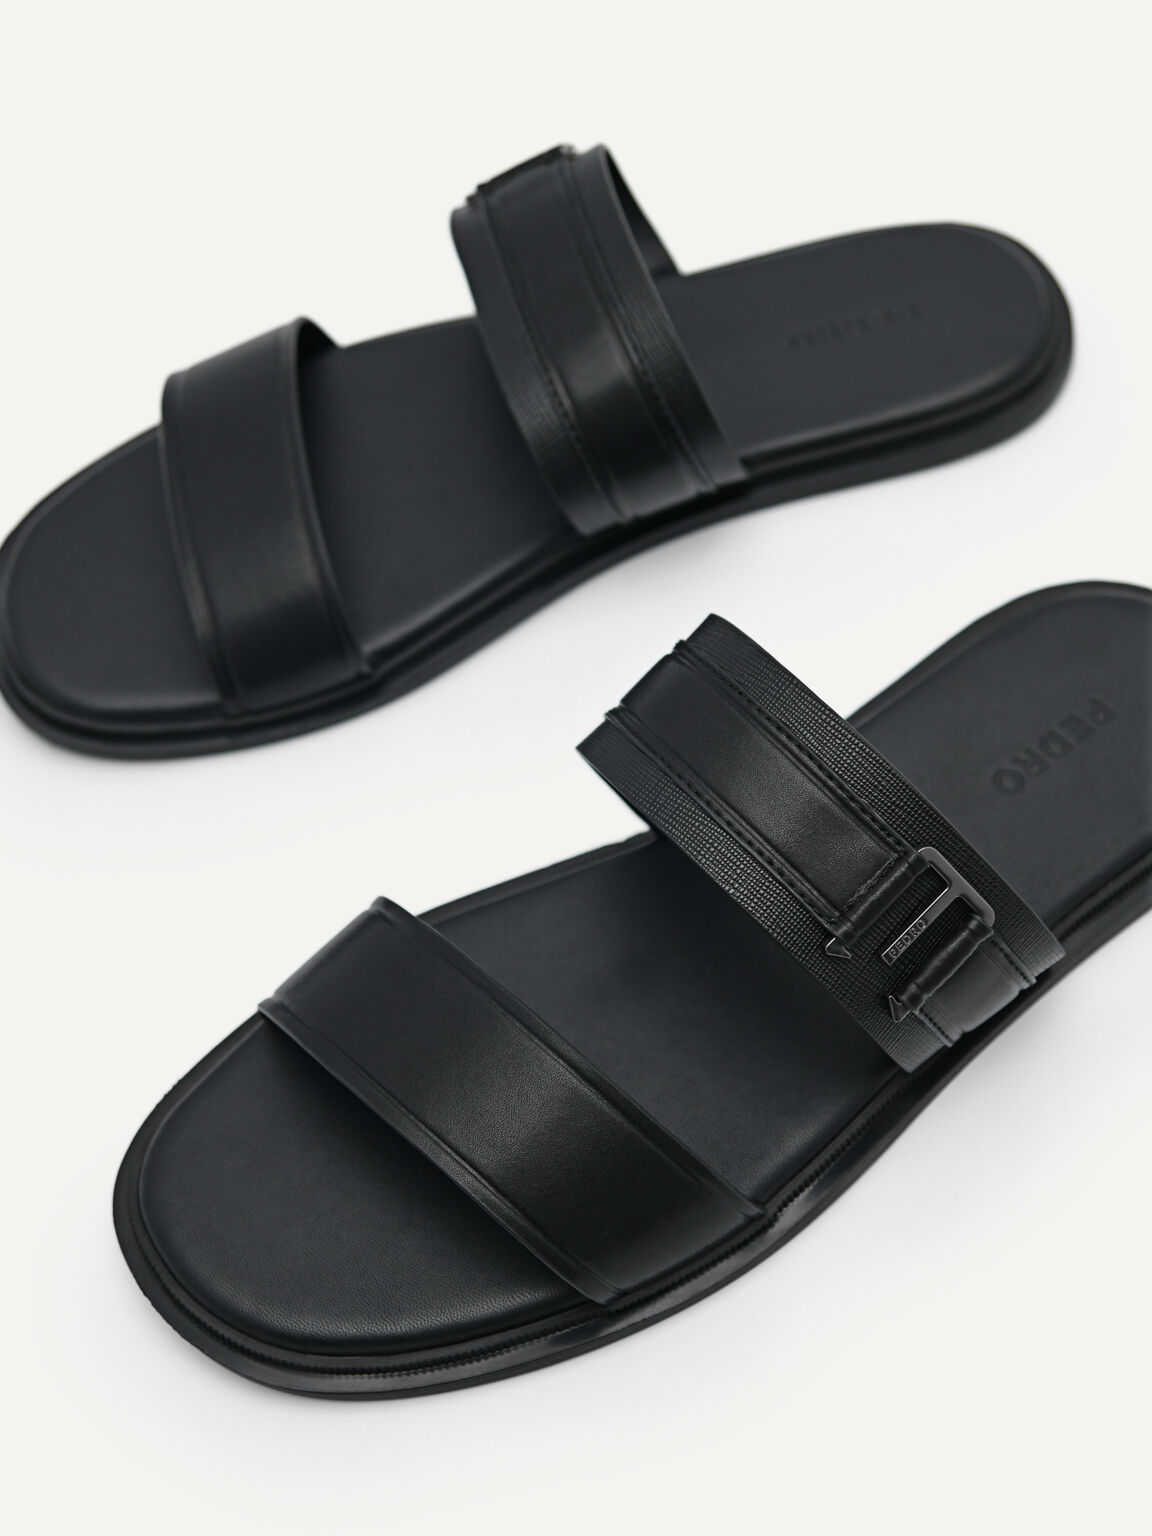 Band Slide Sandals, Black